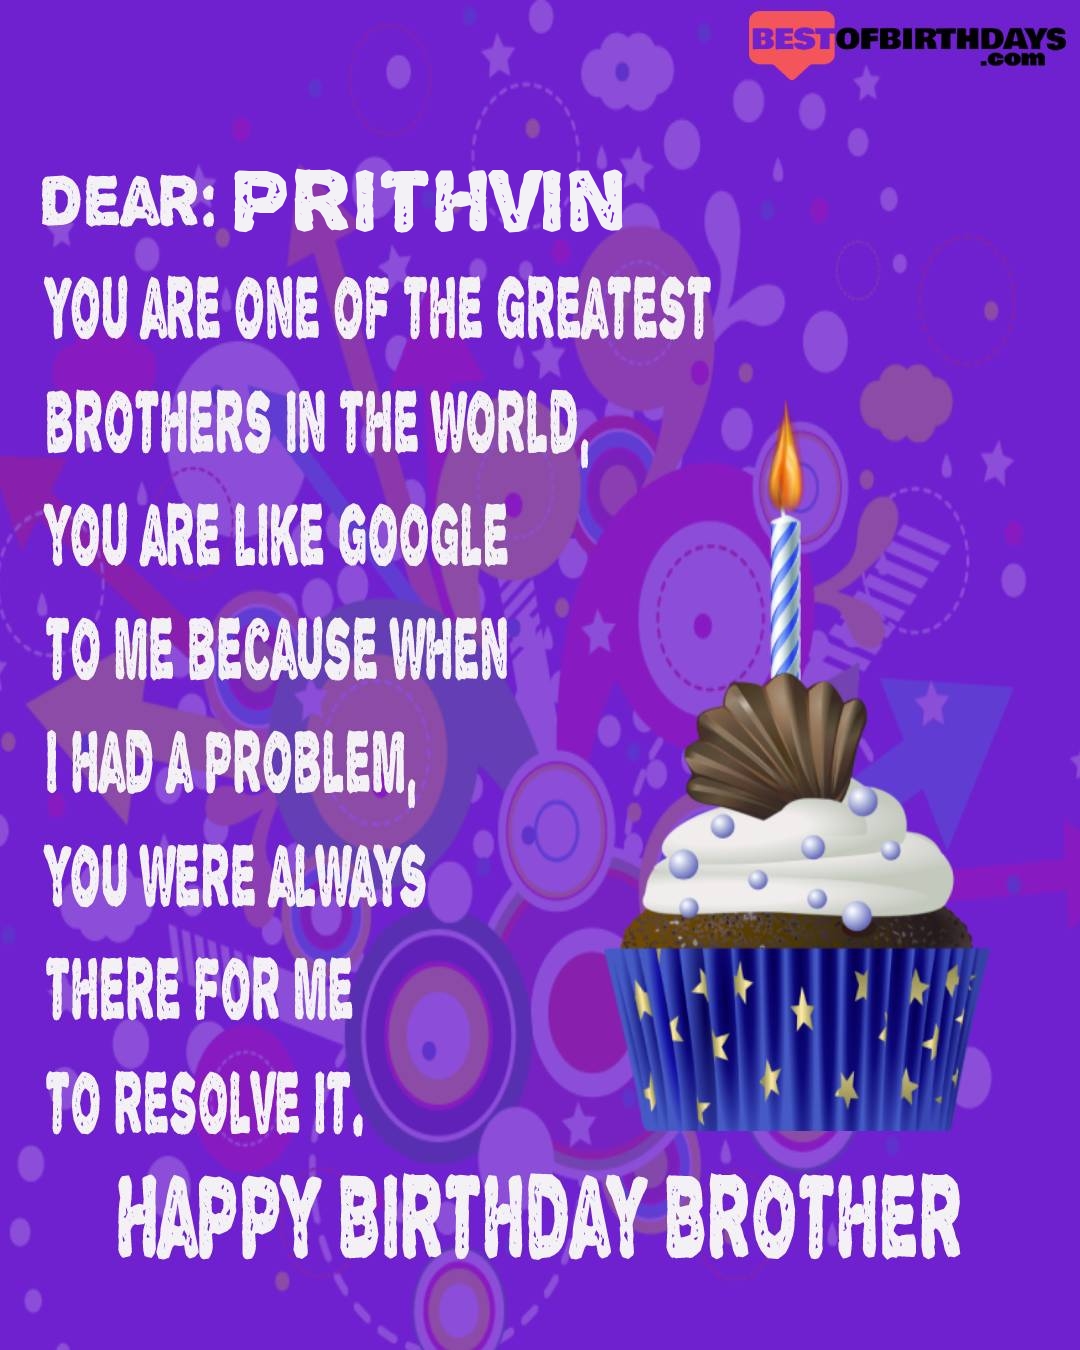 Happy birthday prithvin bhai brother bro